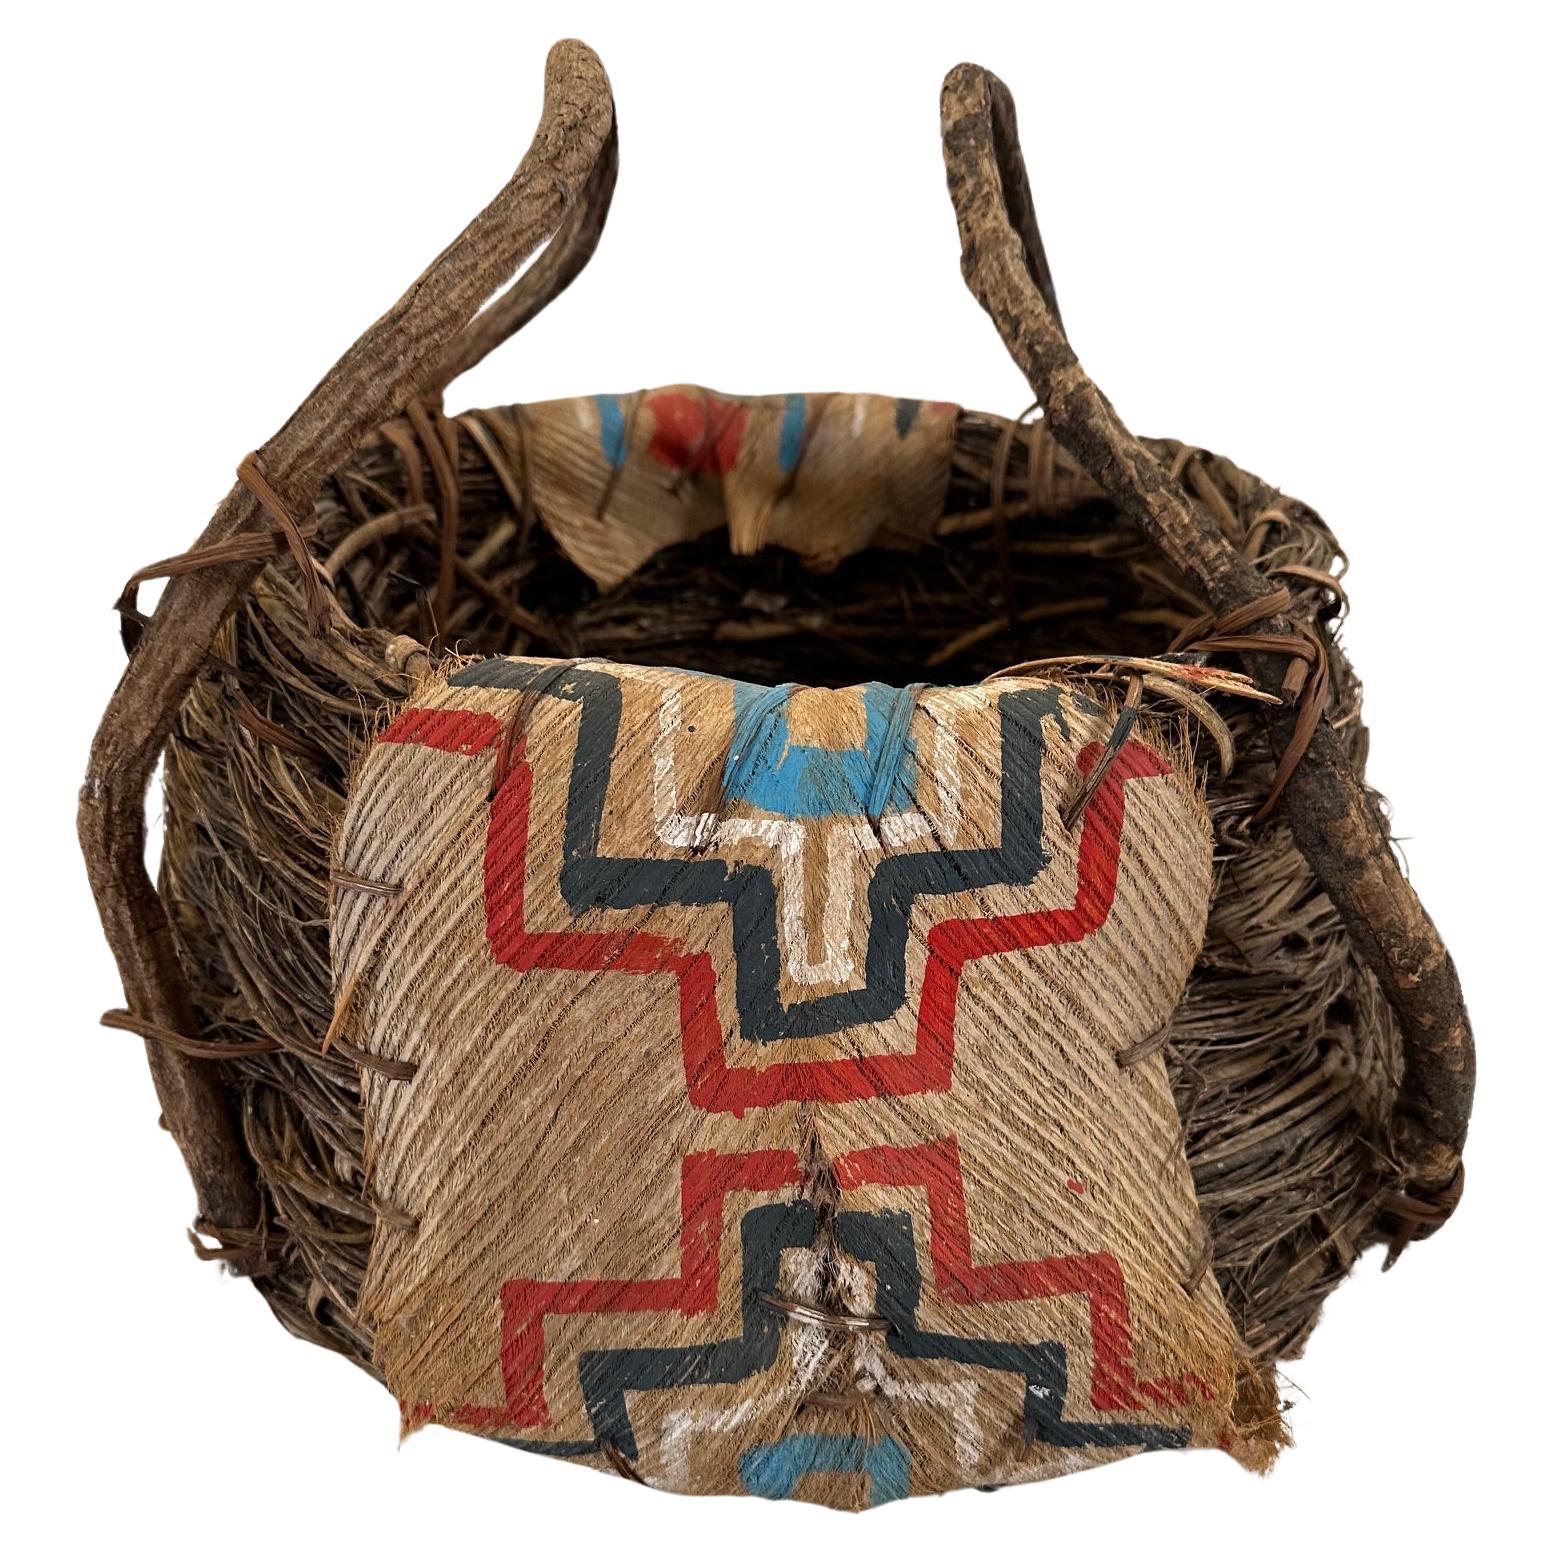 Panier ancien en écorce et brindilles d'origine amérindienne, fait à la main